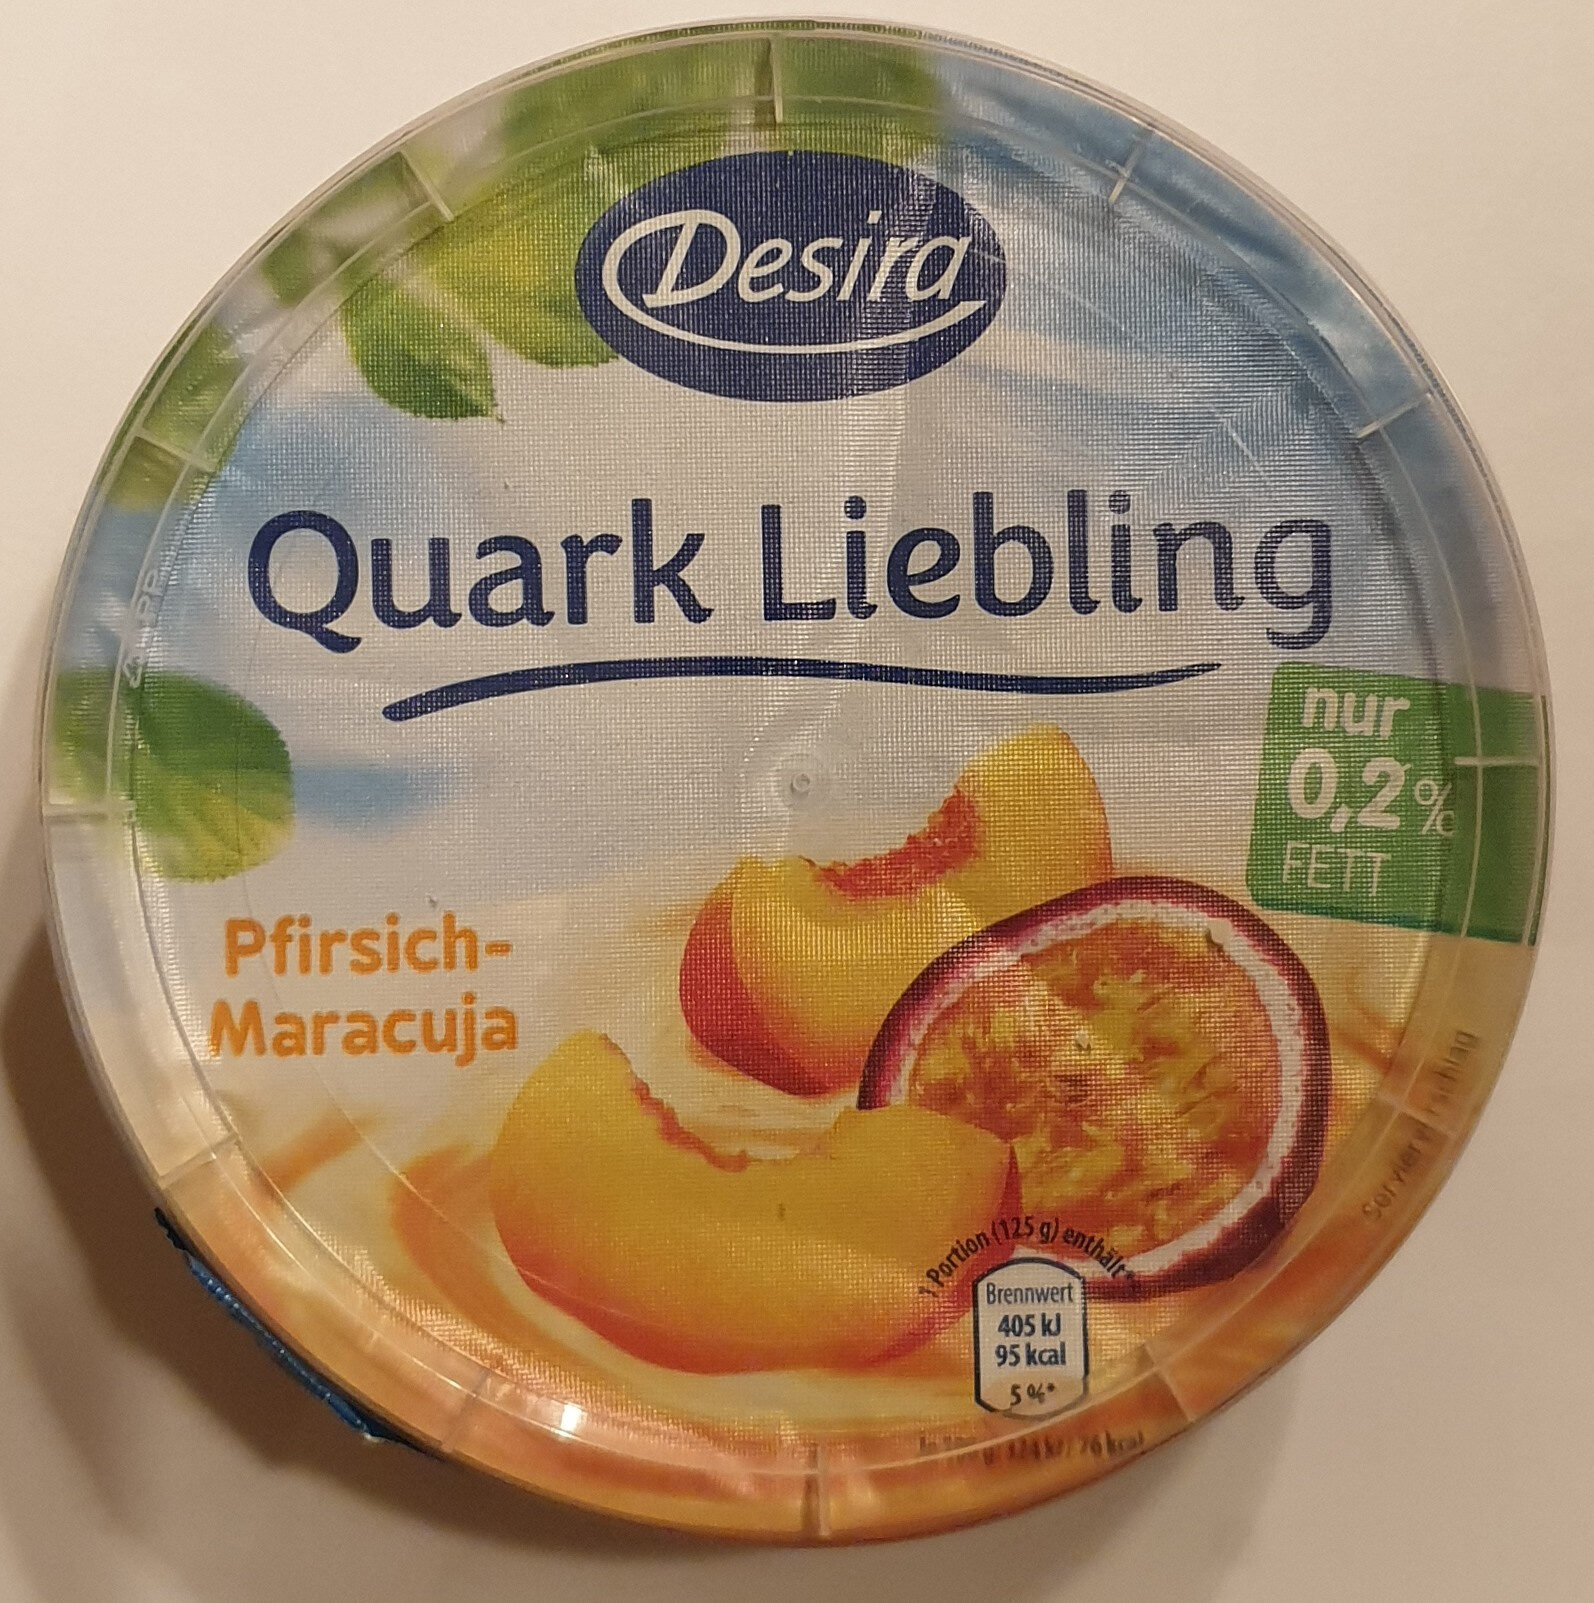 Quark Liebling Pfirsisch-Maracuja - Product - de